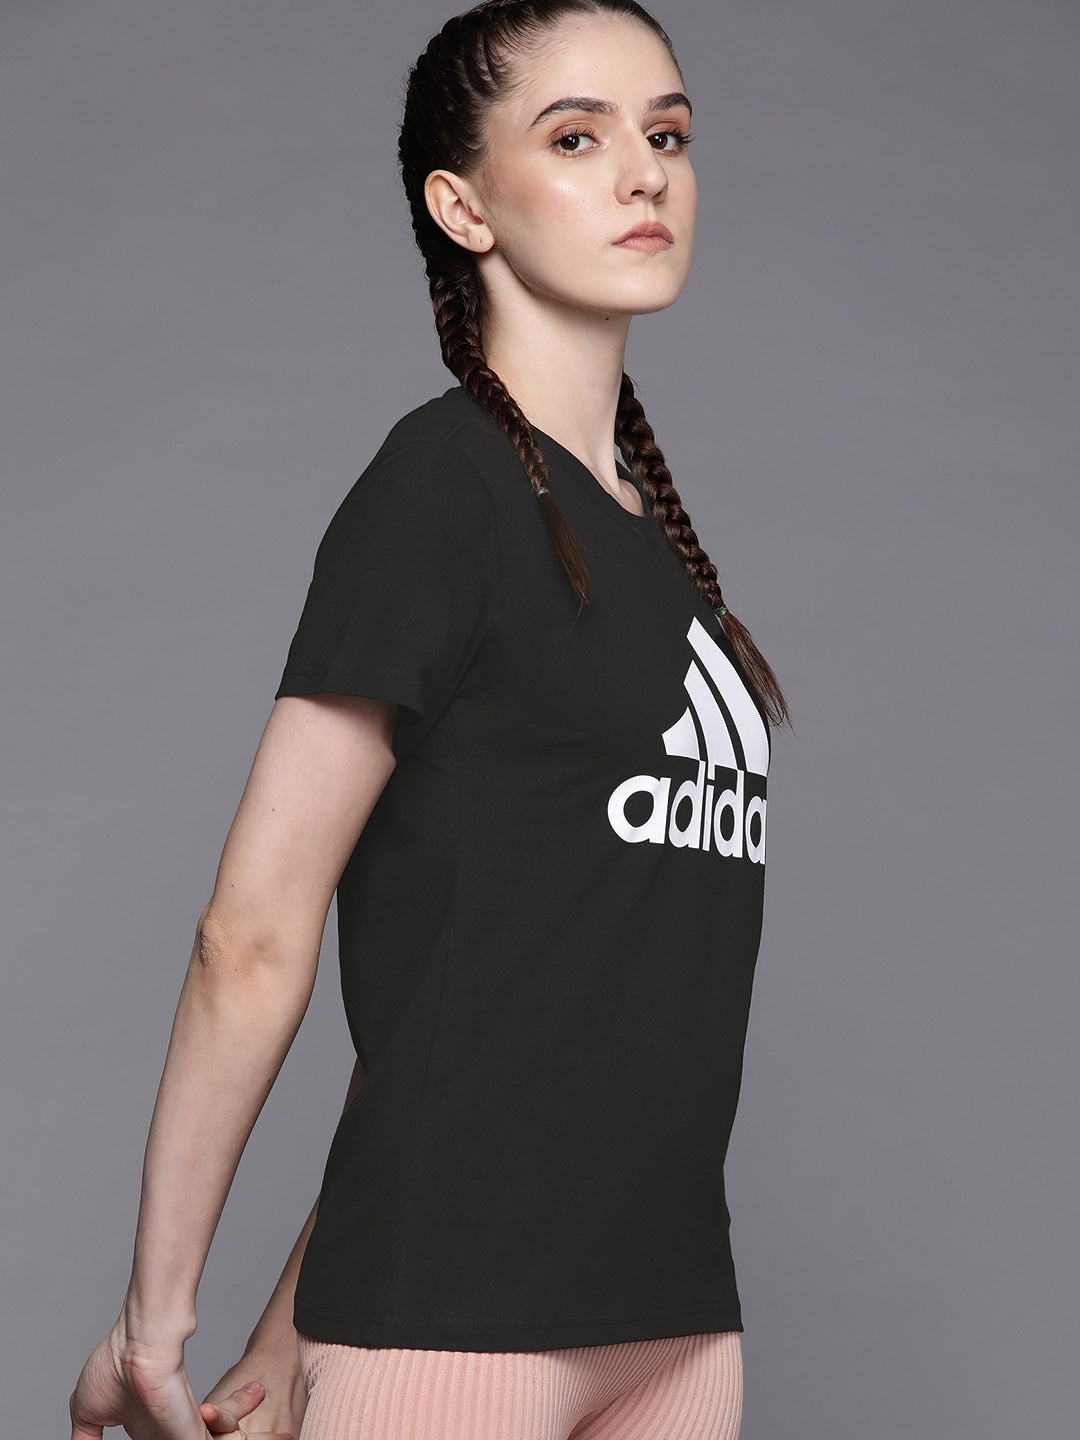 Adidas Women Black & White Brand Logo Printed T-shirt - Distacart